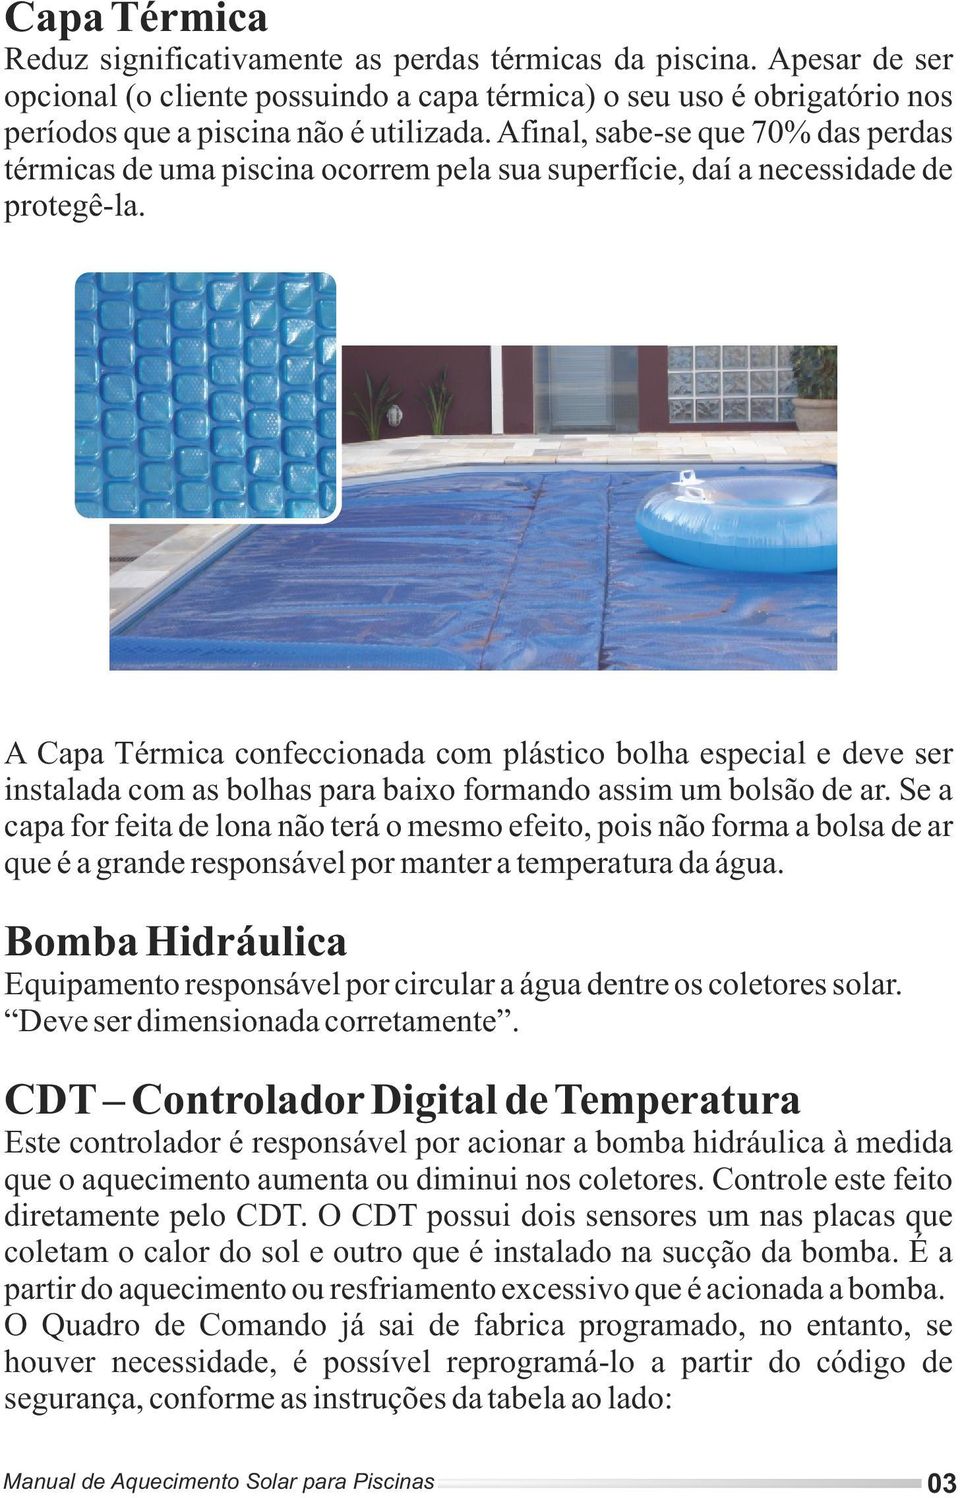 A Capa Térmica confeccionada com plástico bolha especial e deve ser instalada com as bolhas para baixo formando assim um bolsão de ar.